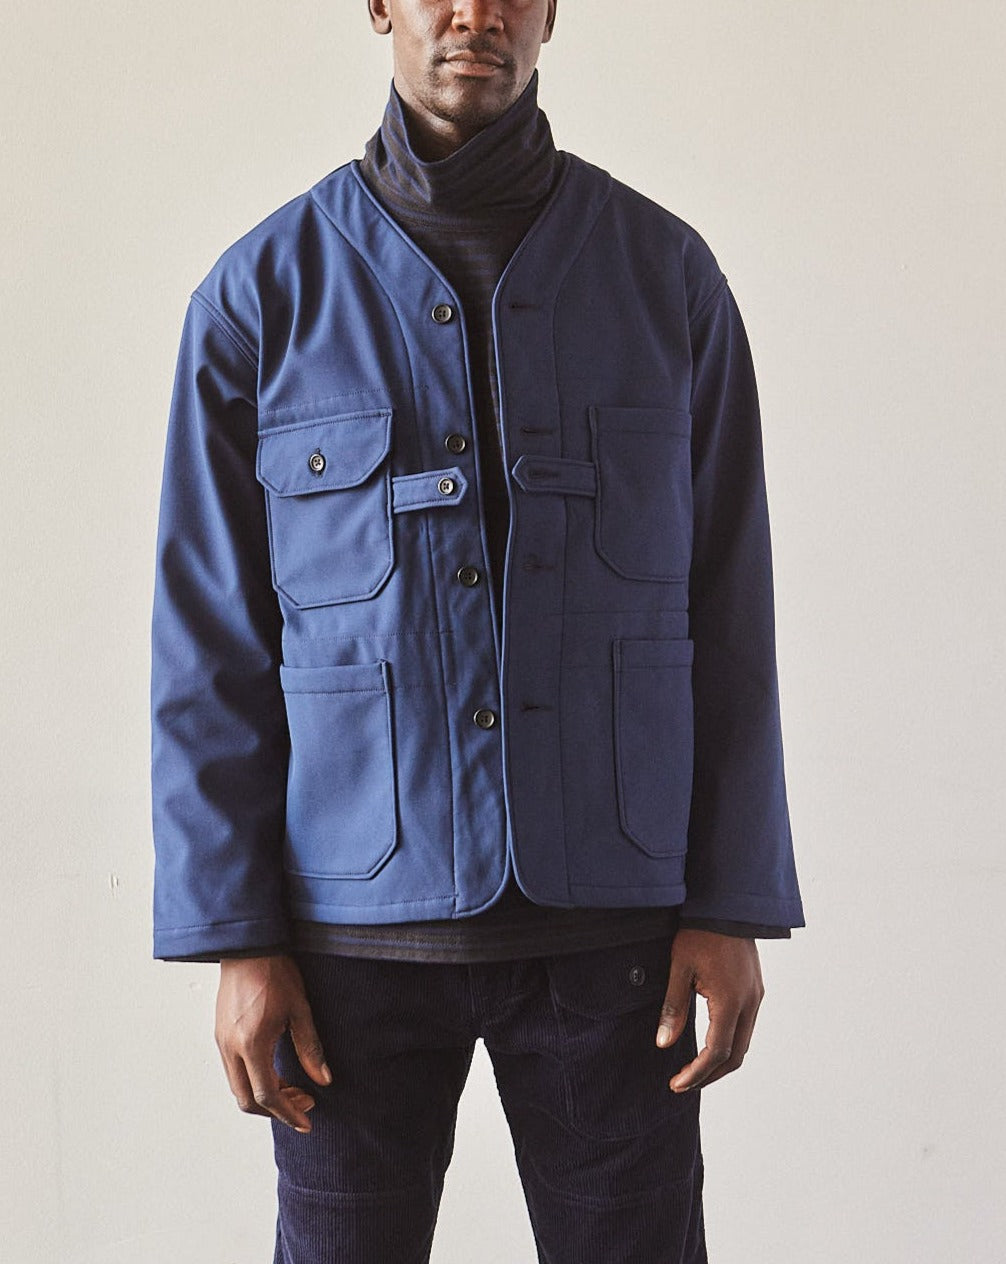 Engineered Garments Bonded Fleece Cardigan Jacket, Navy | Glasswing